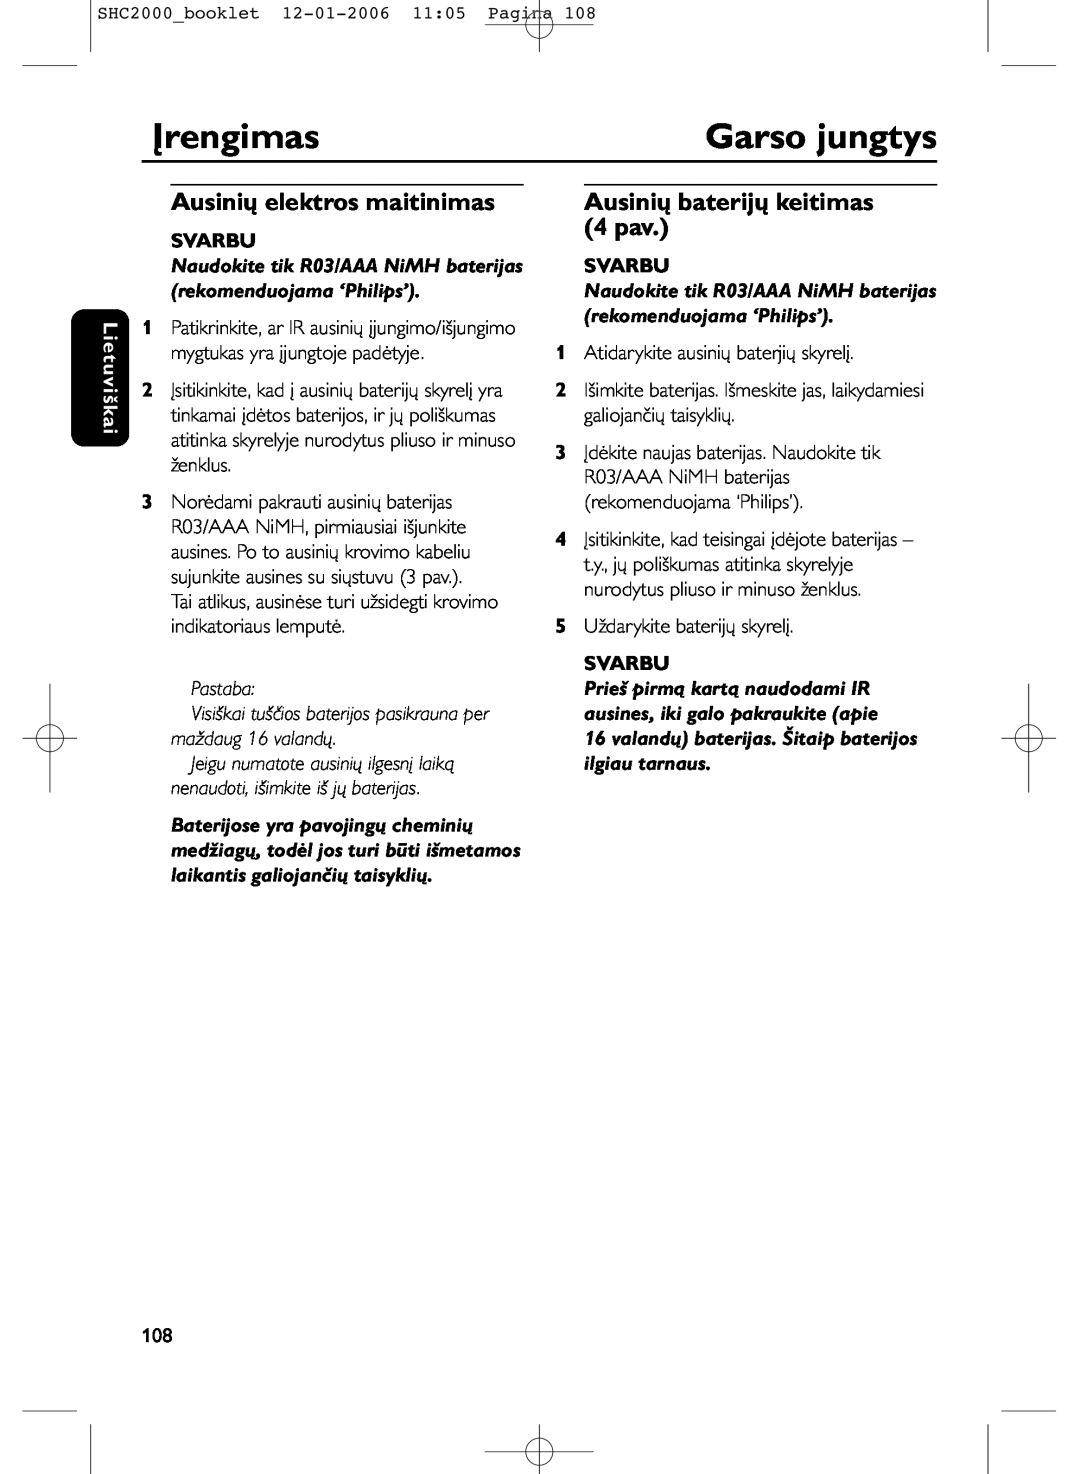 Philips SHC2000 manual Įrengimas, Garso jungtys, Ausinių elektros maitinimas, Ausinių baterijų keitimas 4 pav, Lietuviškai 